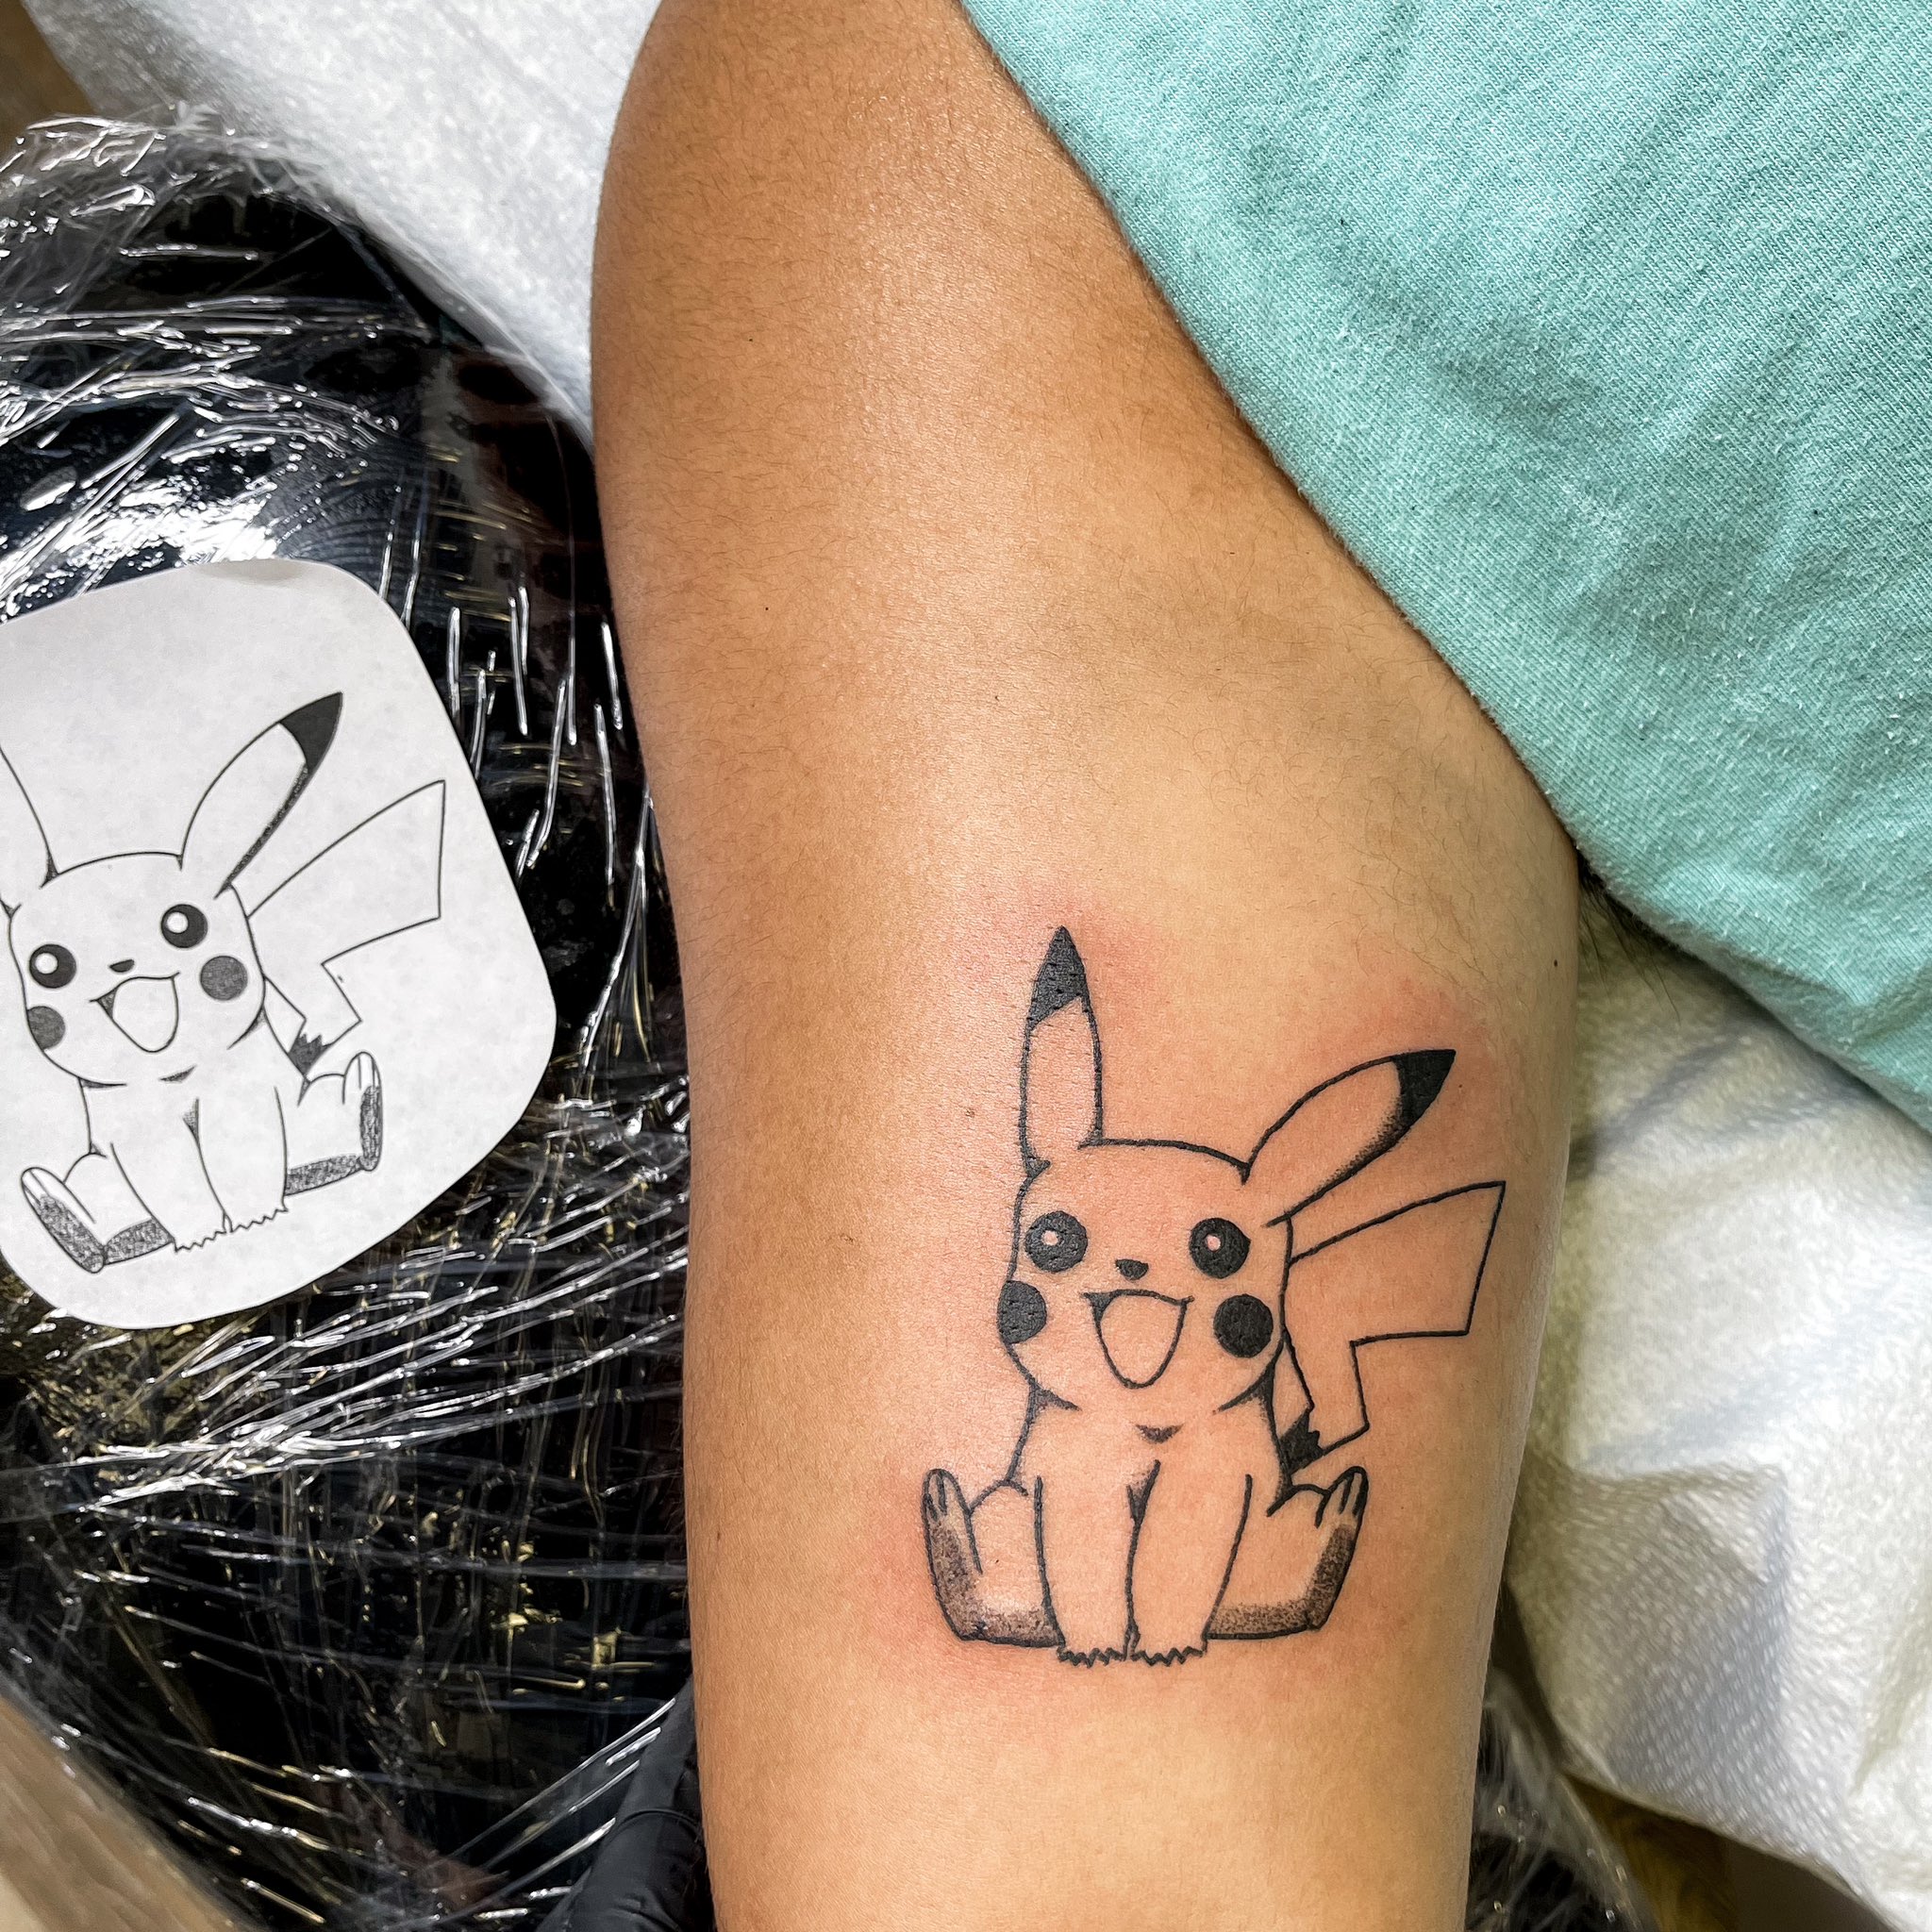 Surprised Pikachu | Pikachu tattoo, Pokemon tattoo, Small tattoos